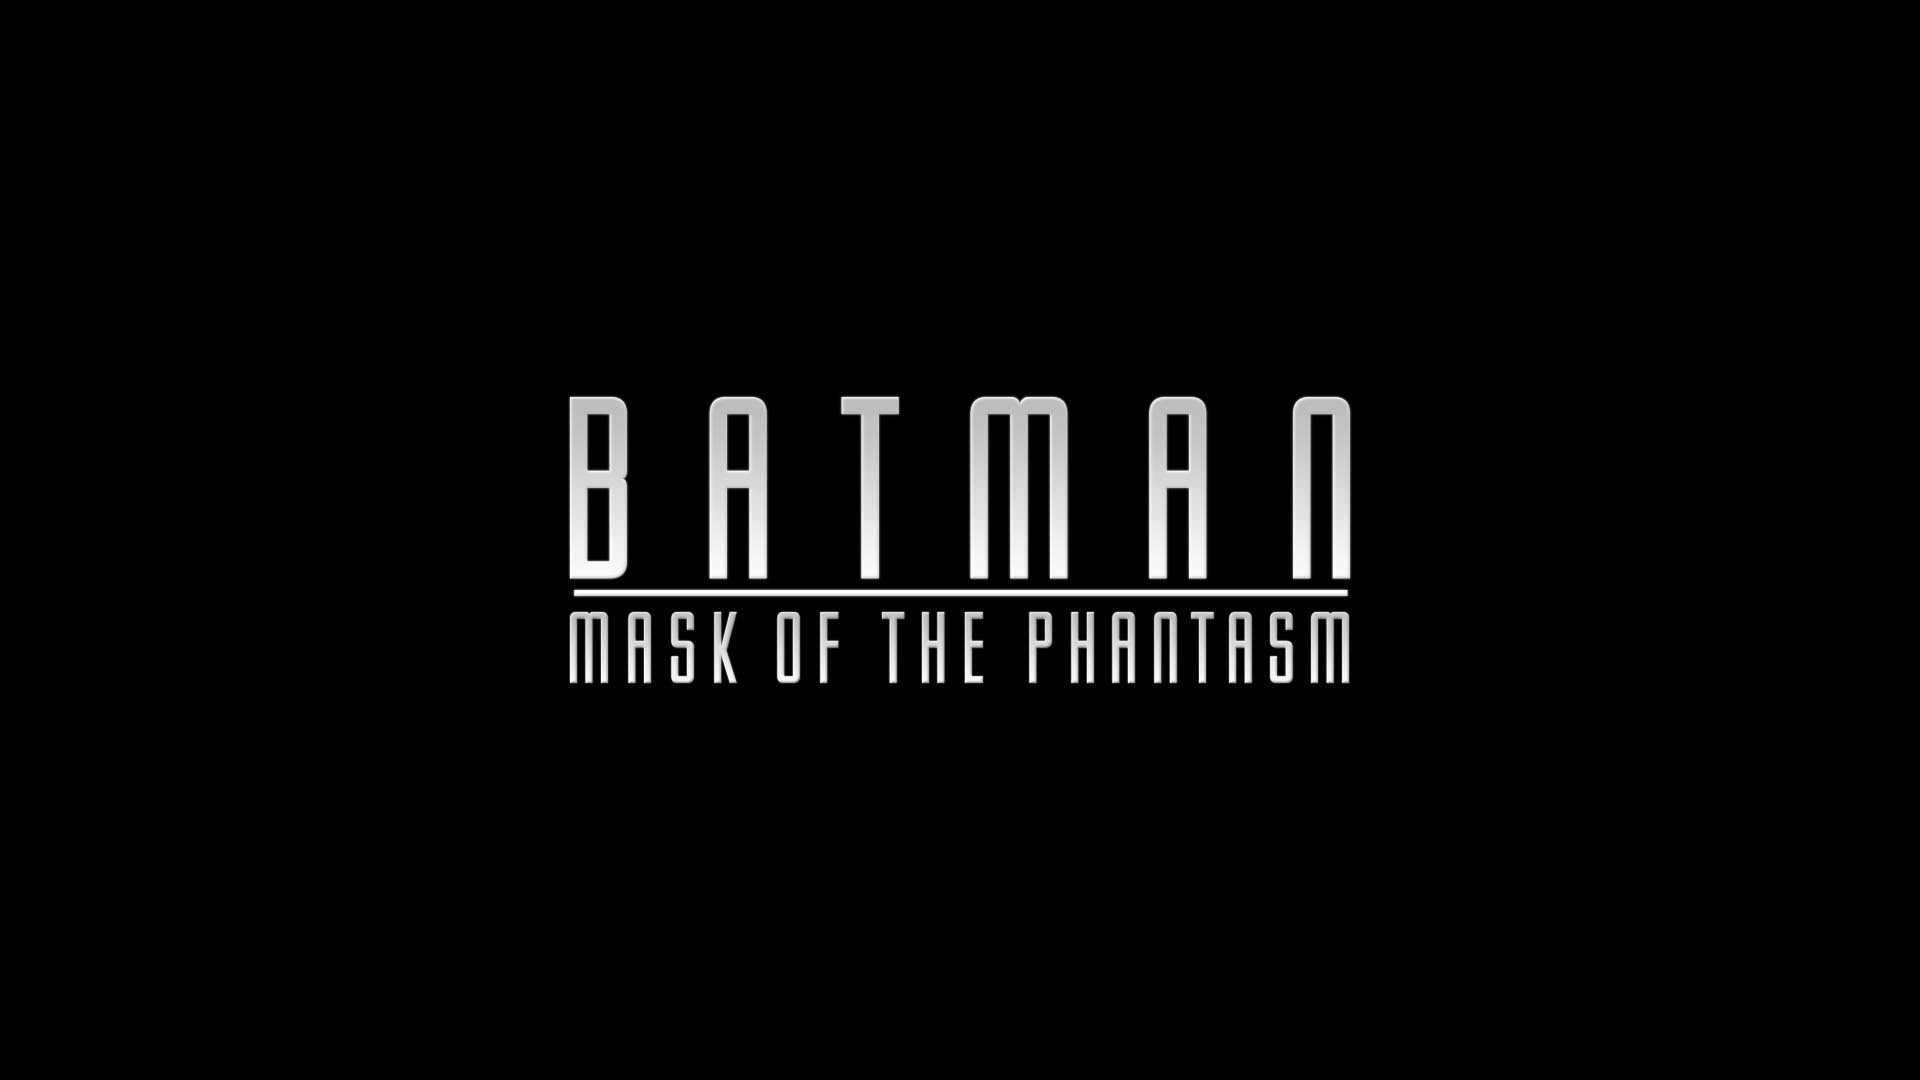 Movie Batman Mask Of The Phantasm 1920x1080